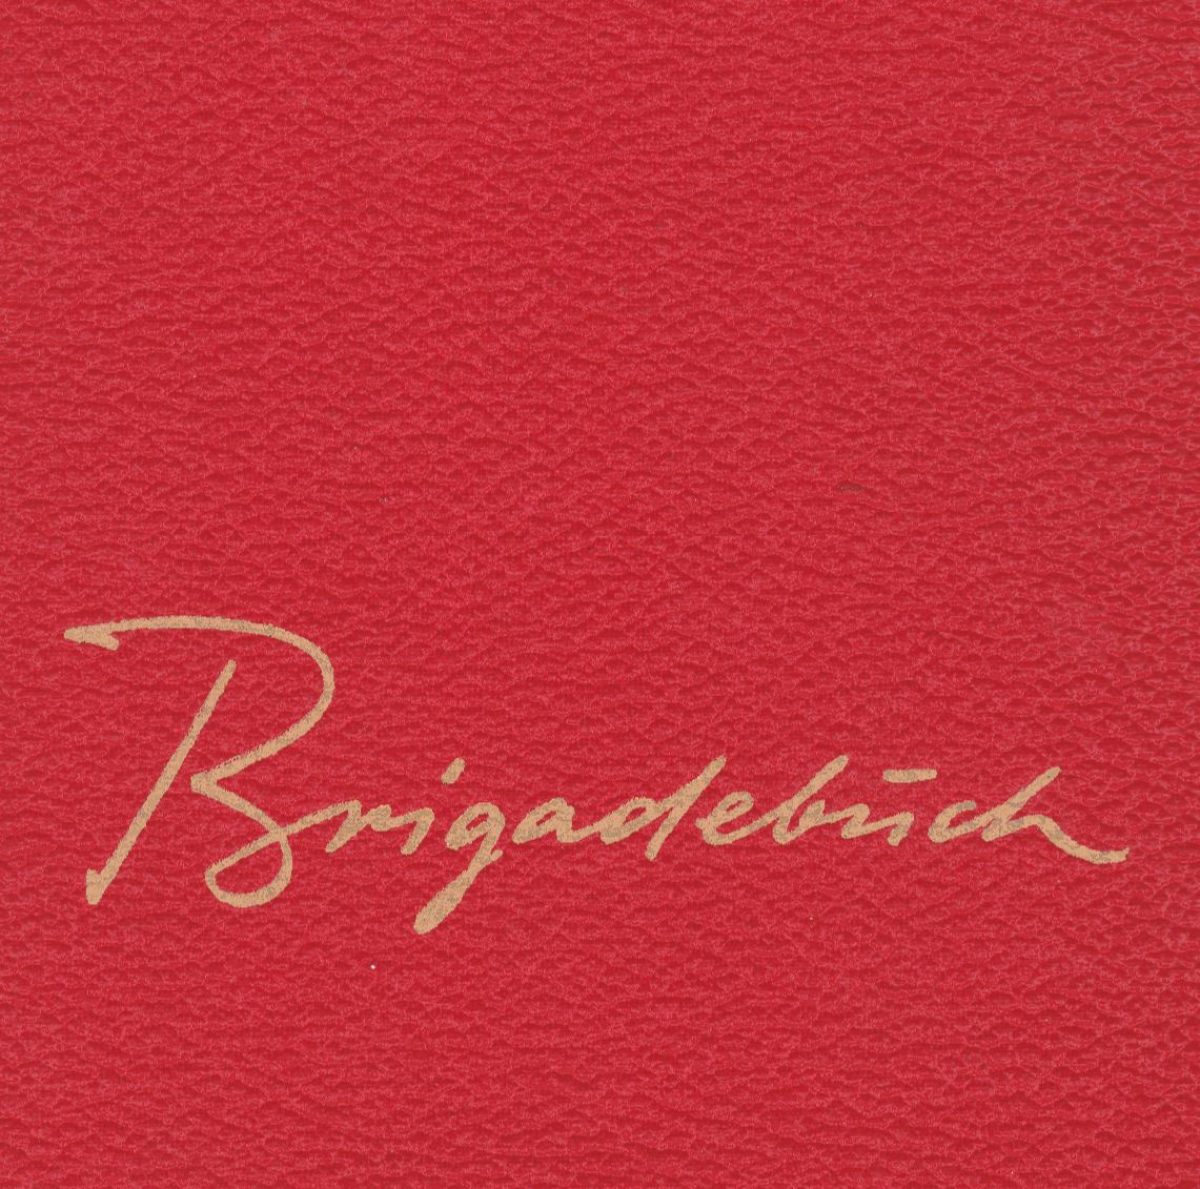 Brigadebuch von 1977 bis 1980